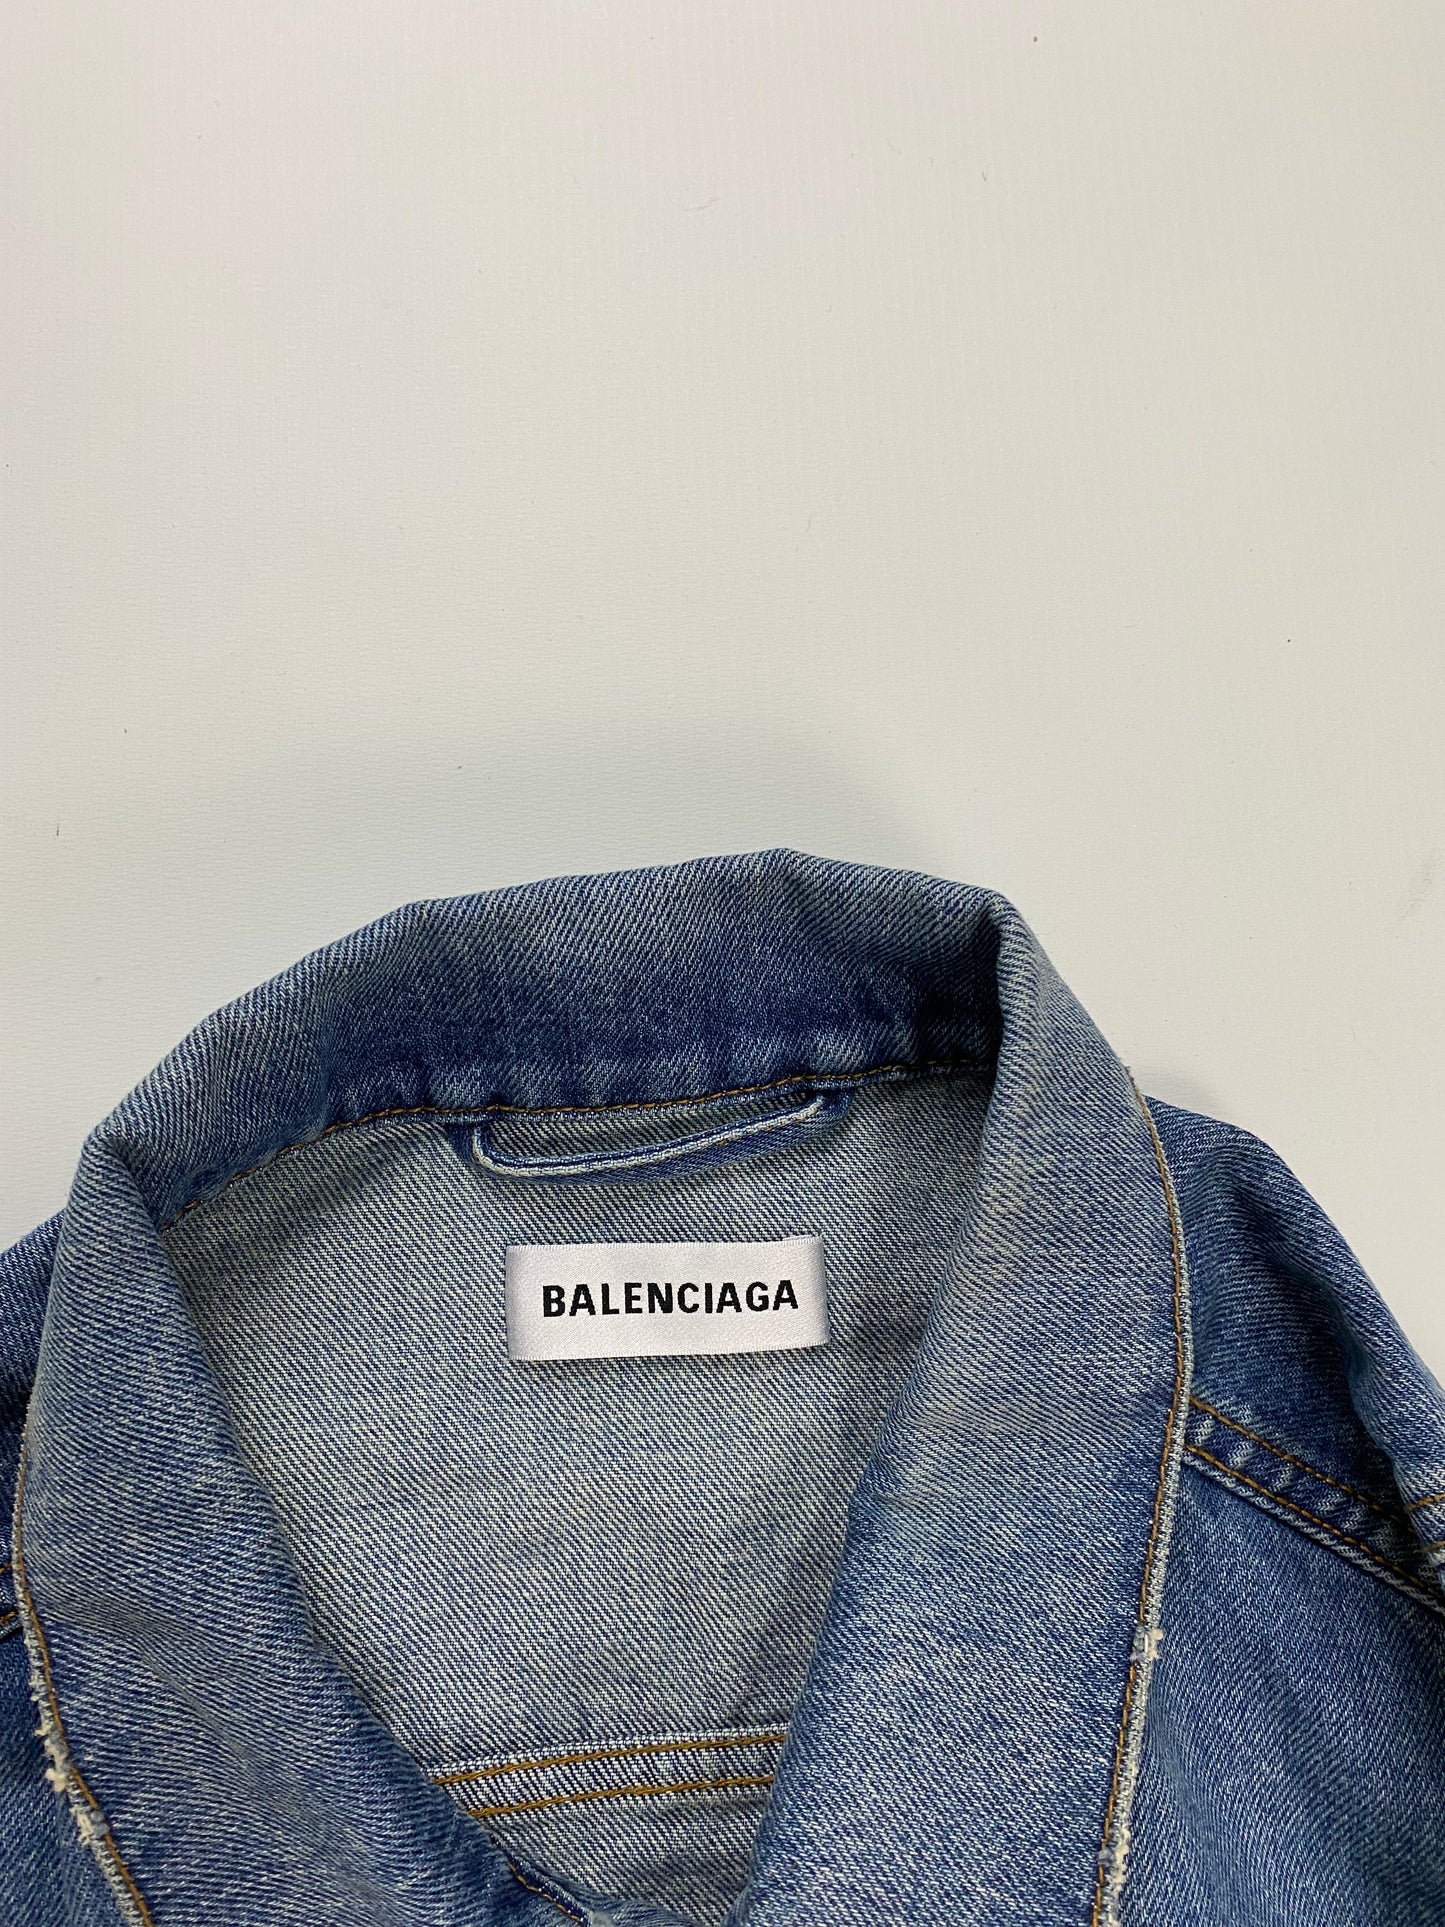 Balenciaga oversized Japanese denim jacket in blue SZ:38